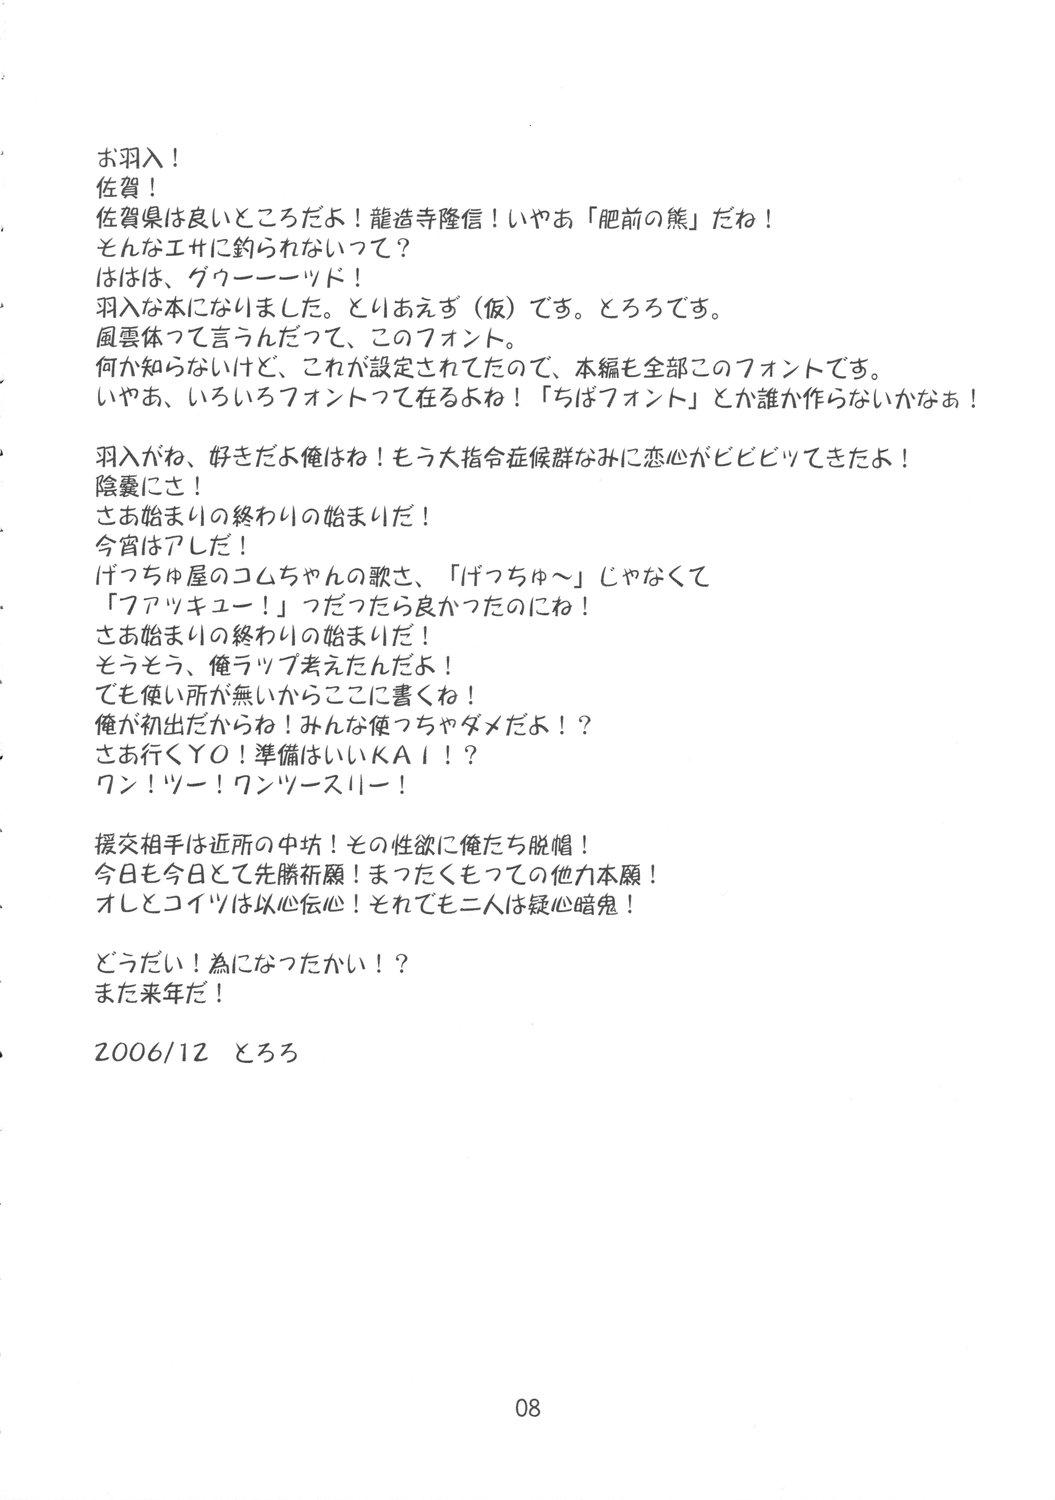 Gag Yume no Kakera - Higurashi no naku koro ni Weird - Page 7